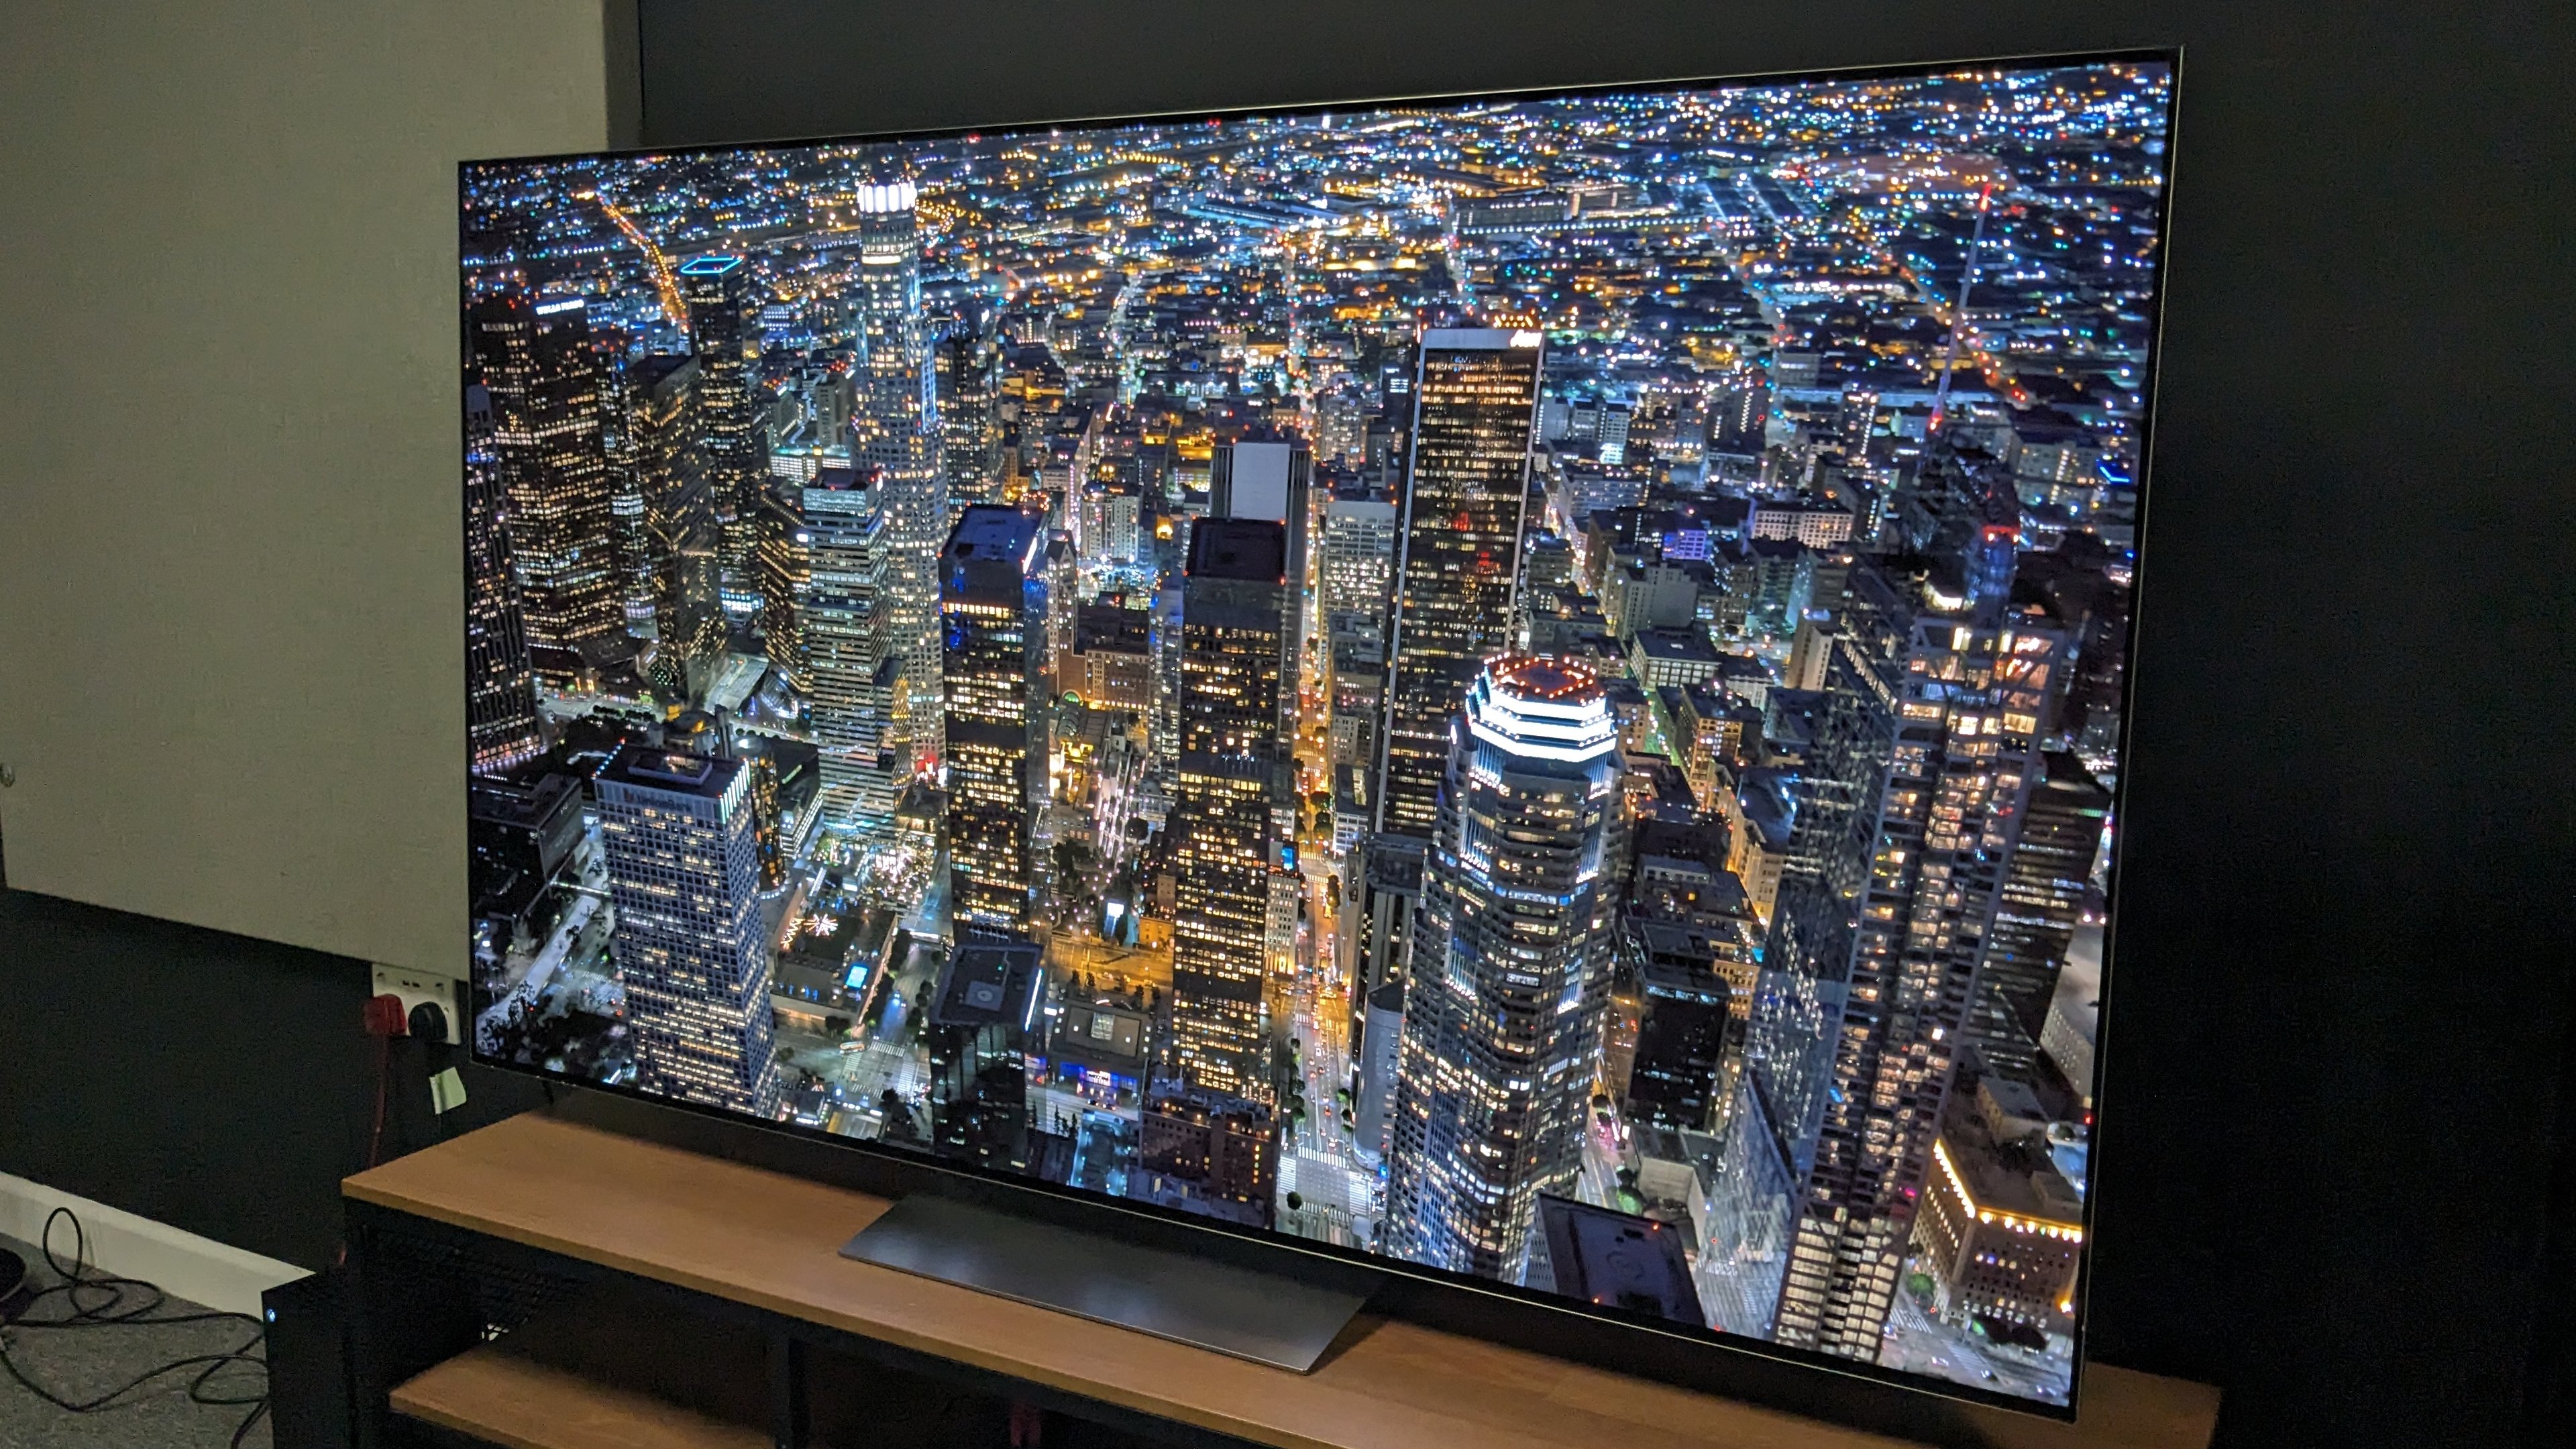 LG G3 OLED Review: Best TV of 2023 So Far - Tech Advisor